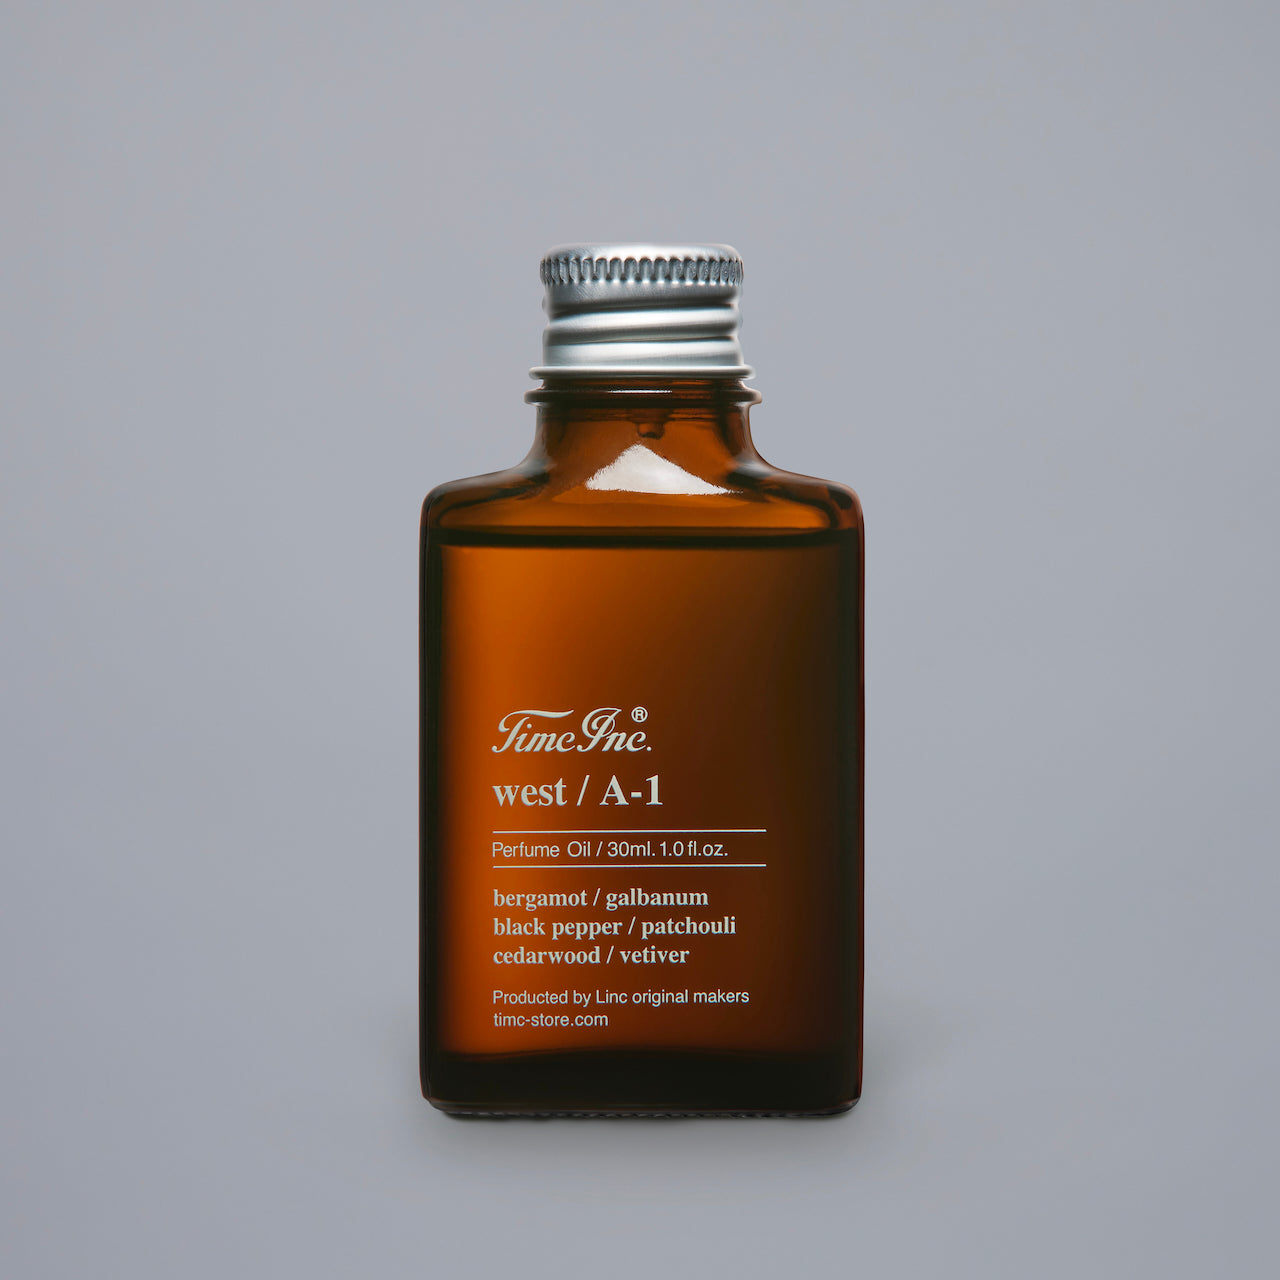 Perfume Oil west / A-1 – Timc Inc.